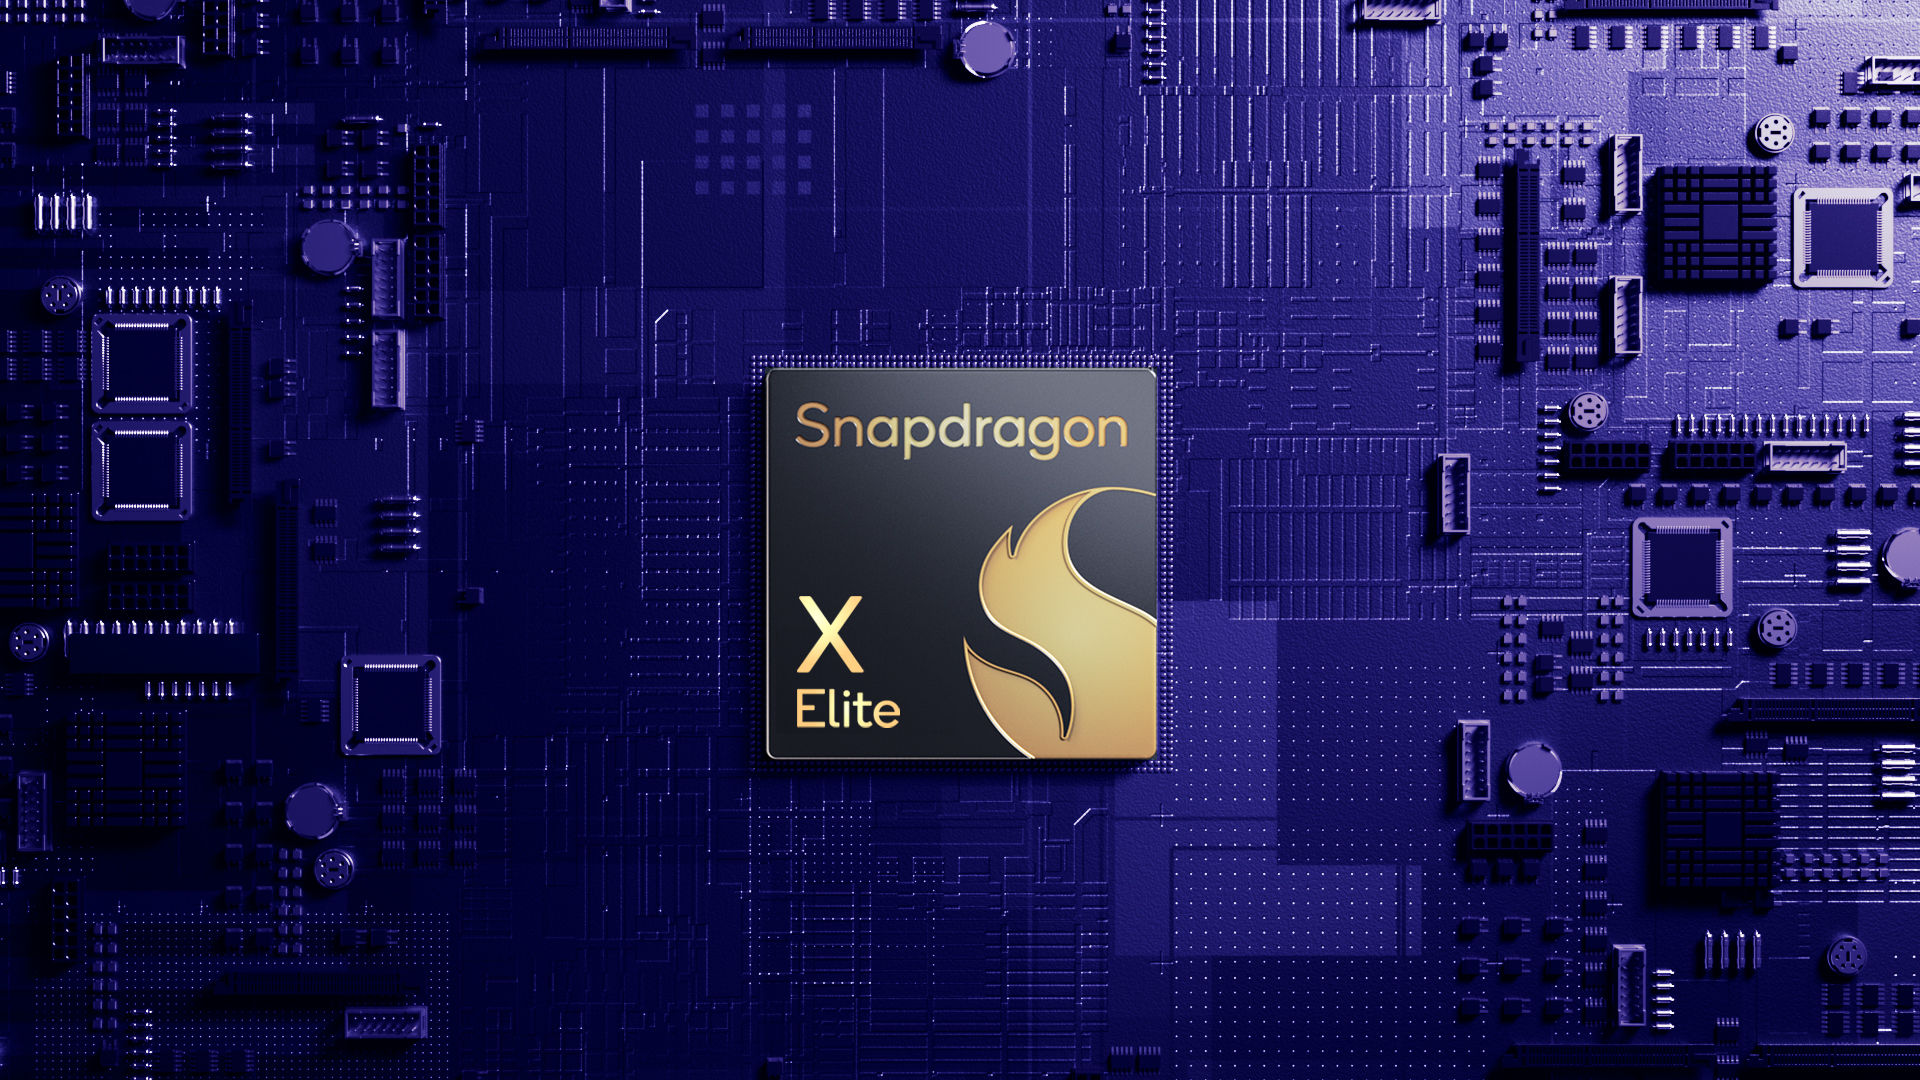 Snapdragon X Elite viser en ytelsesforbedring på 49 %.